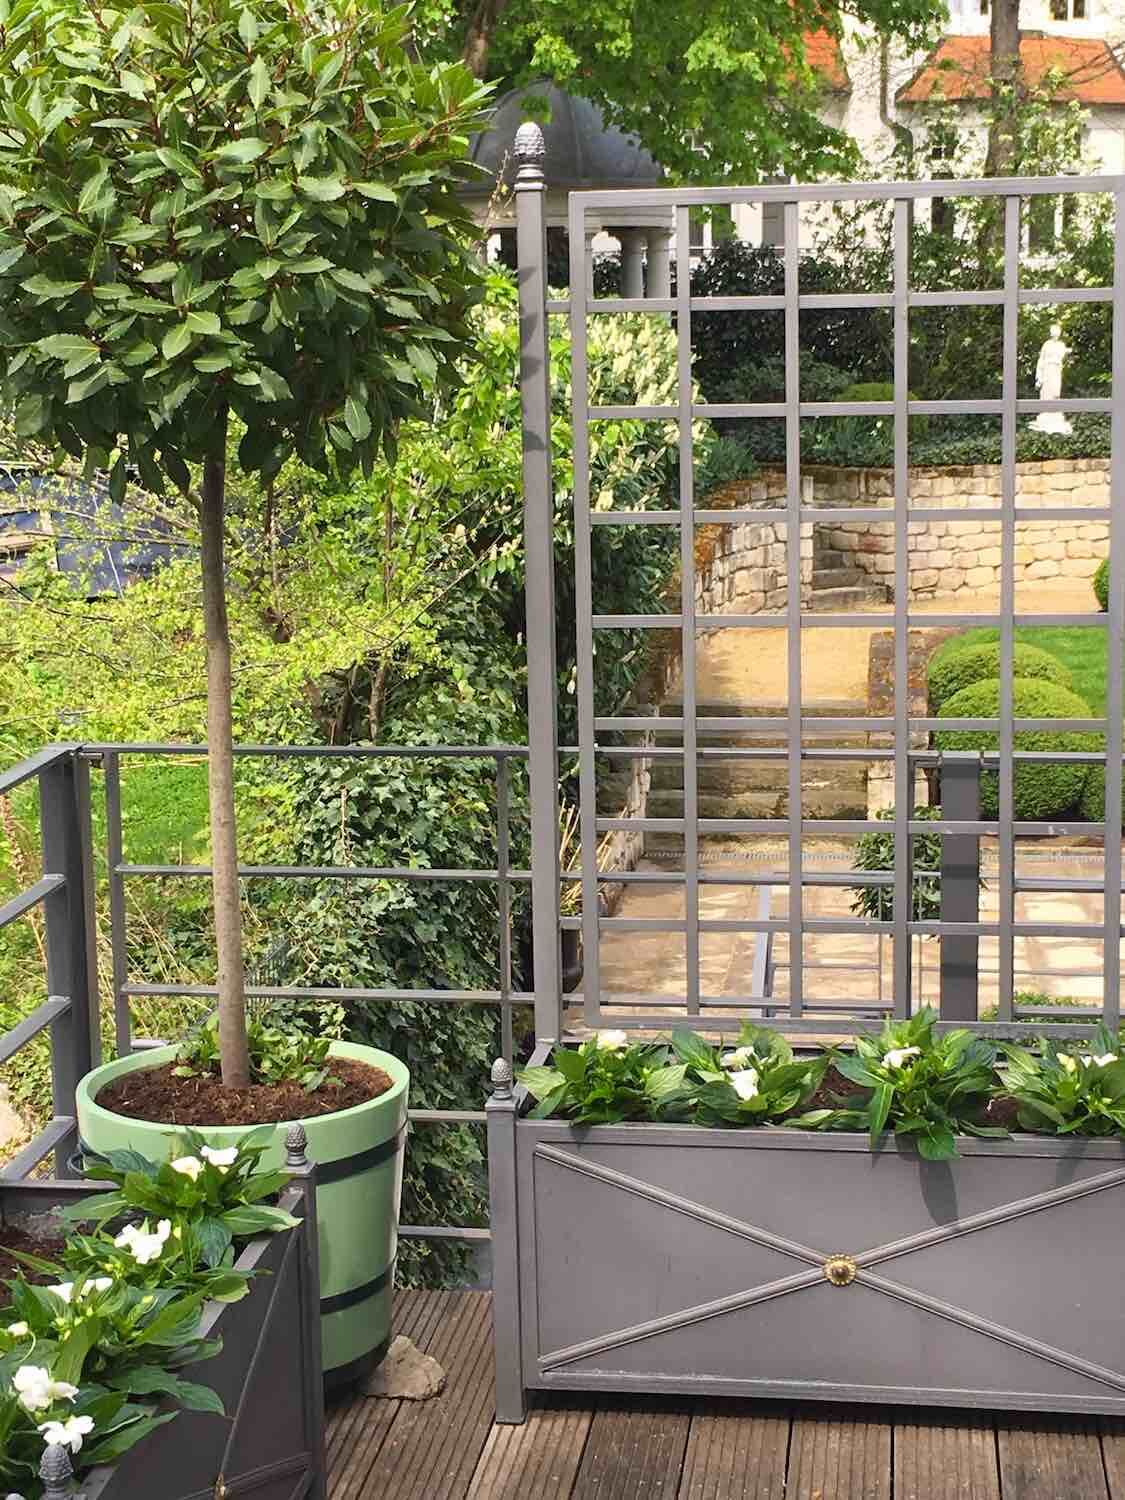 Magdeburg: Orangeriekübel SANS, SOUCI auf Terrasse, mit Blick in den Garten.